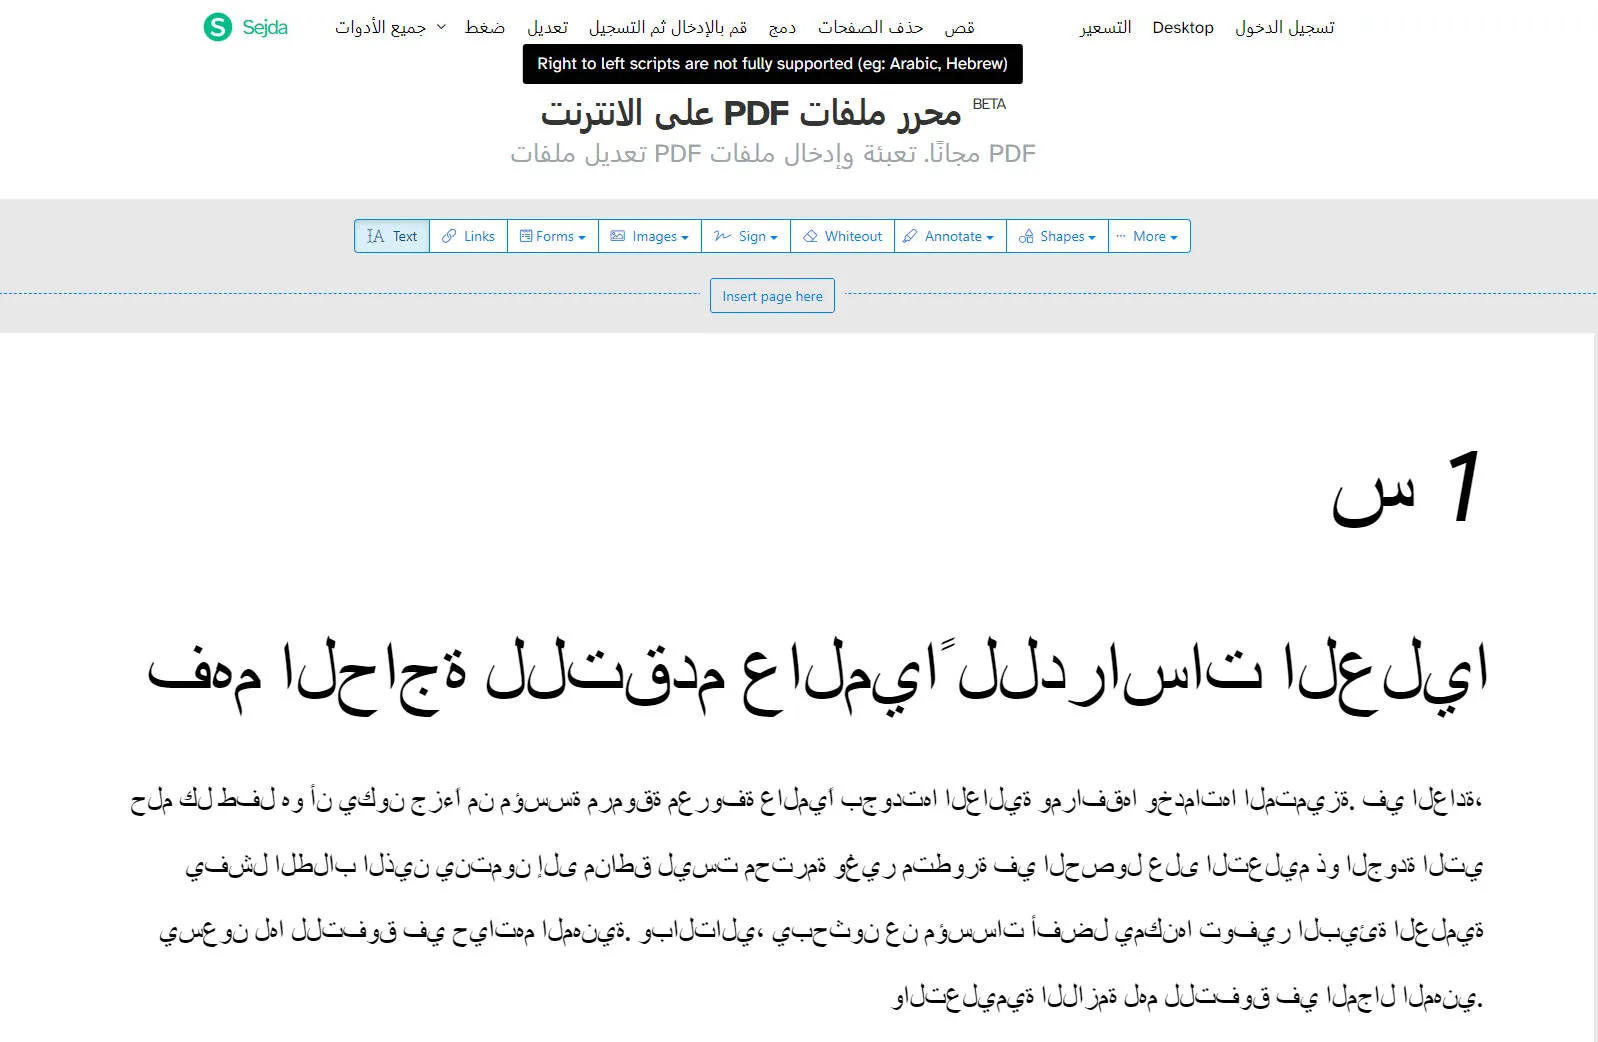 Sejda PDF, éditeur de PDF en arabe en ligne